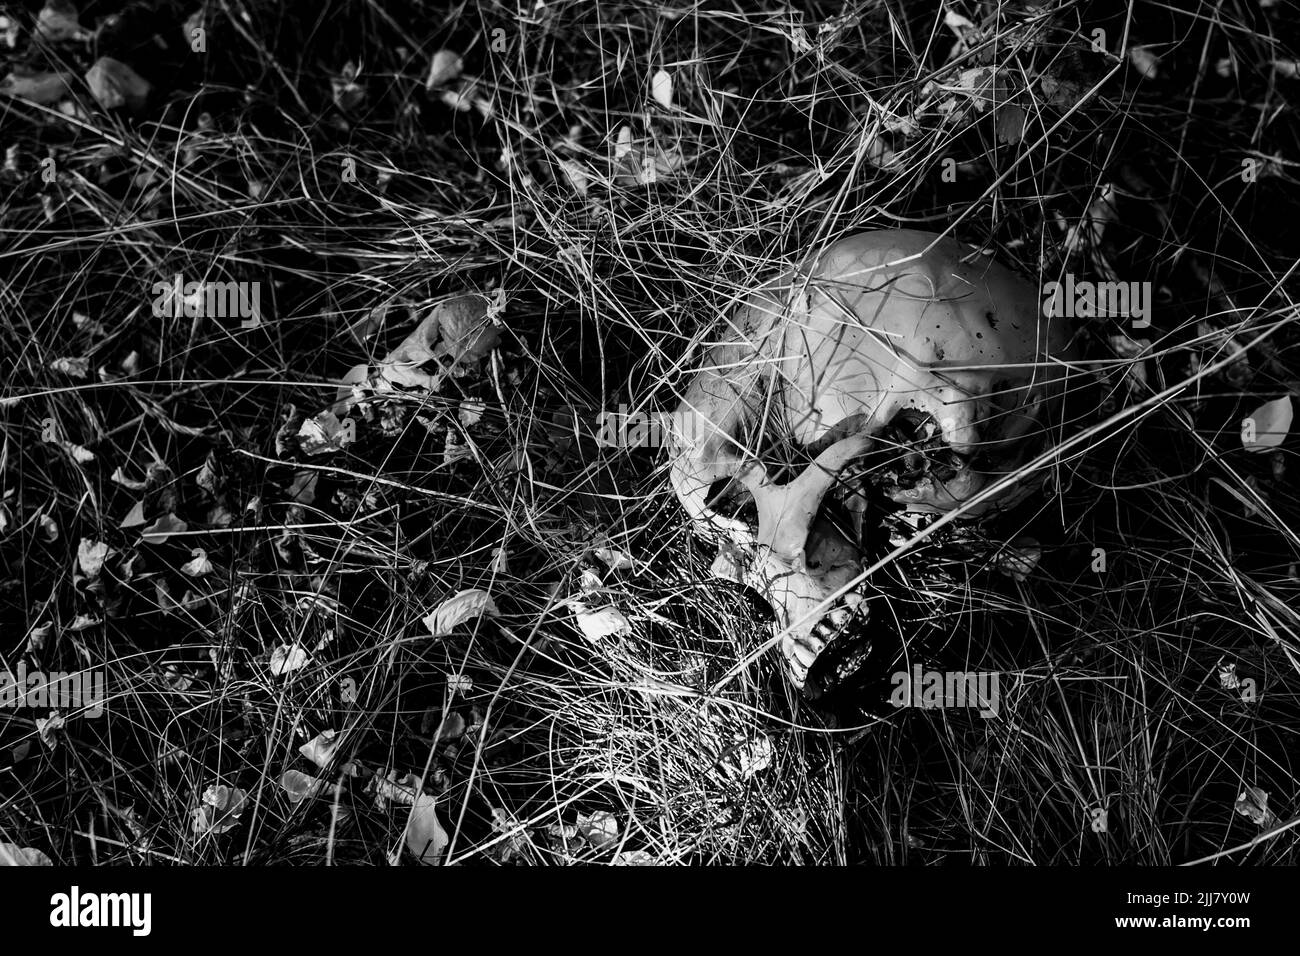 Un crâne humain dans l'herbe Banque D'Images